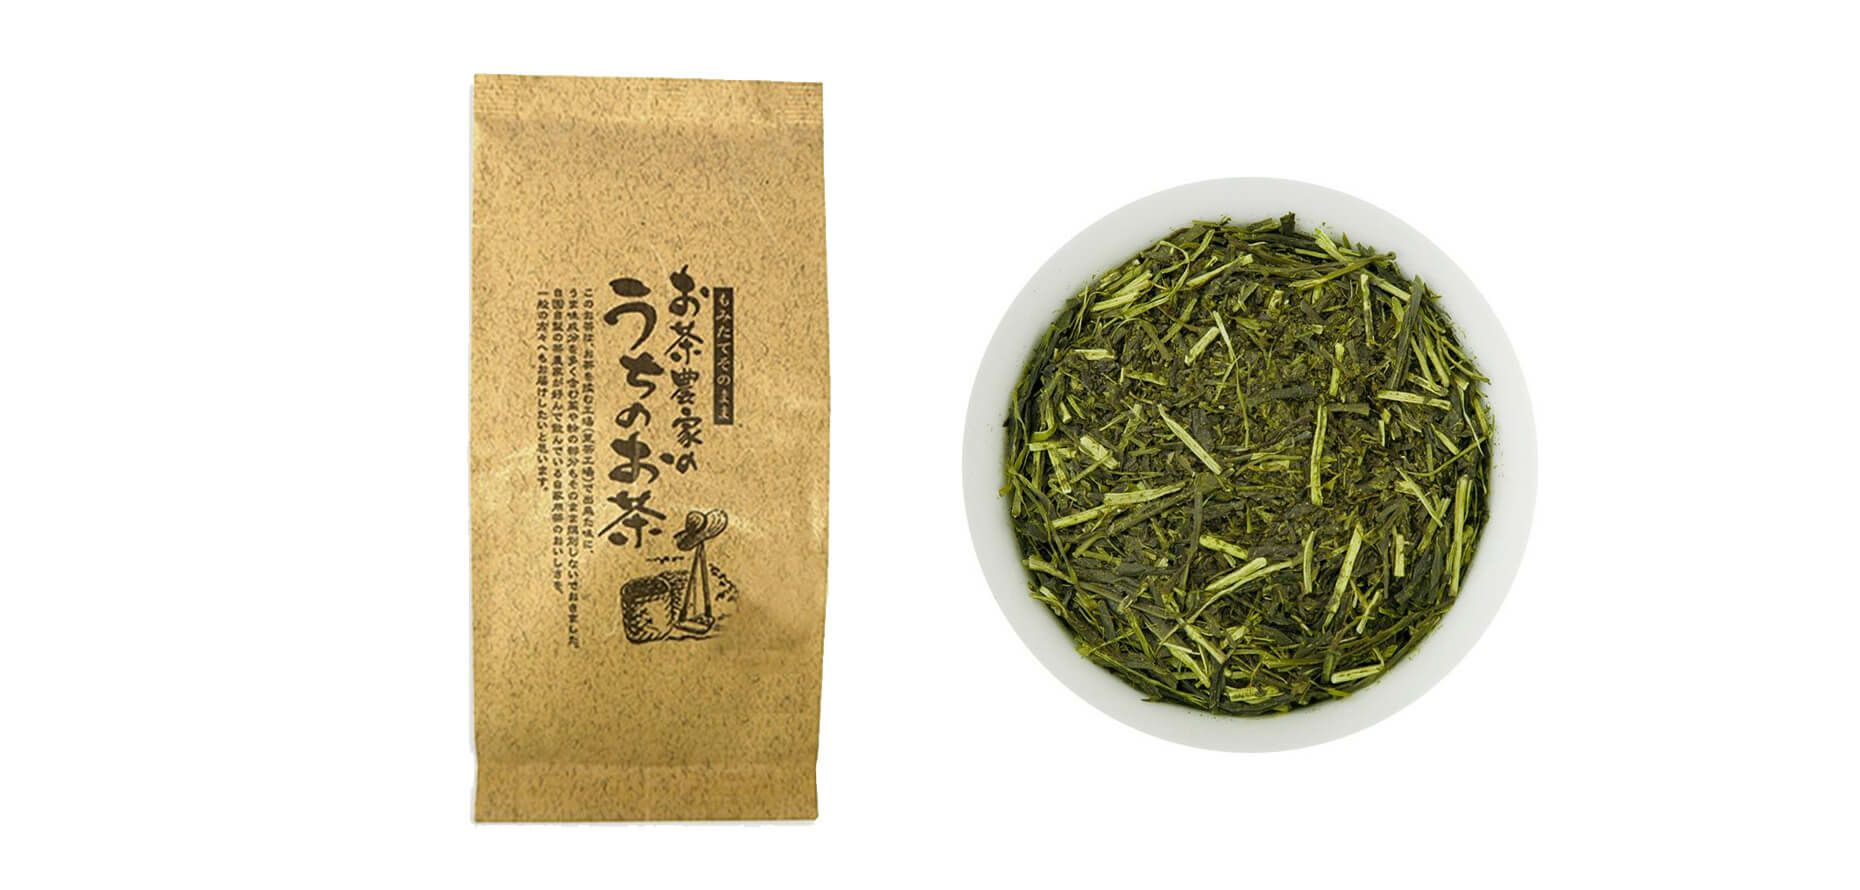 【静岡・掛川茶】新茶 お茶農家のうちのお茶 150g